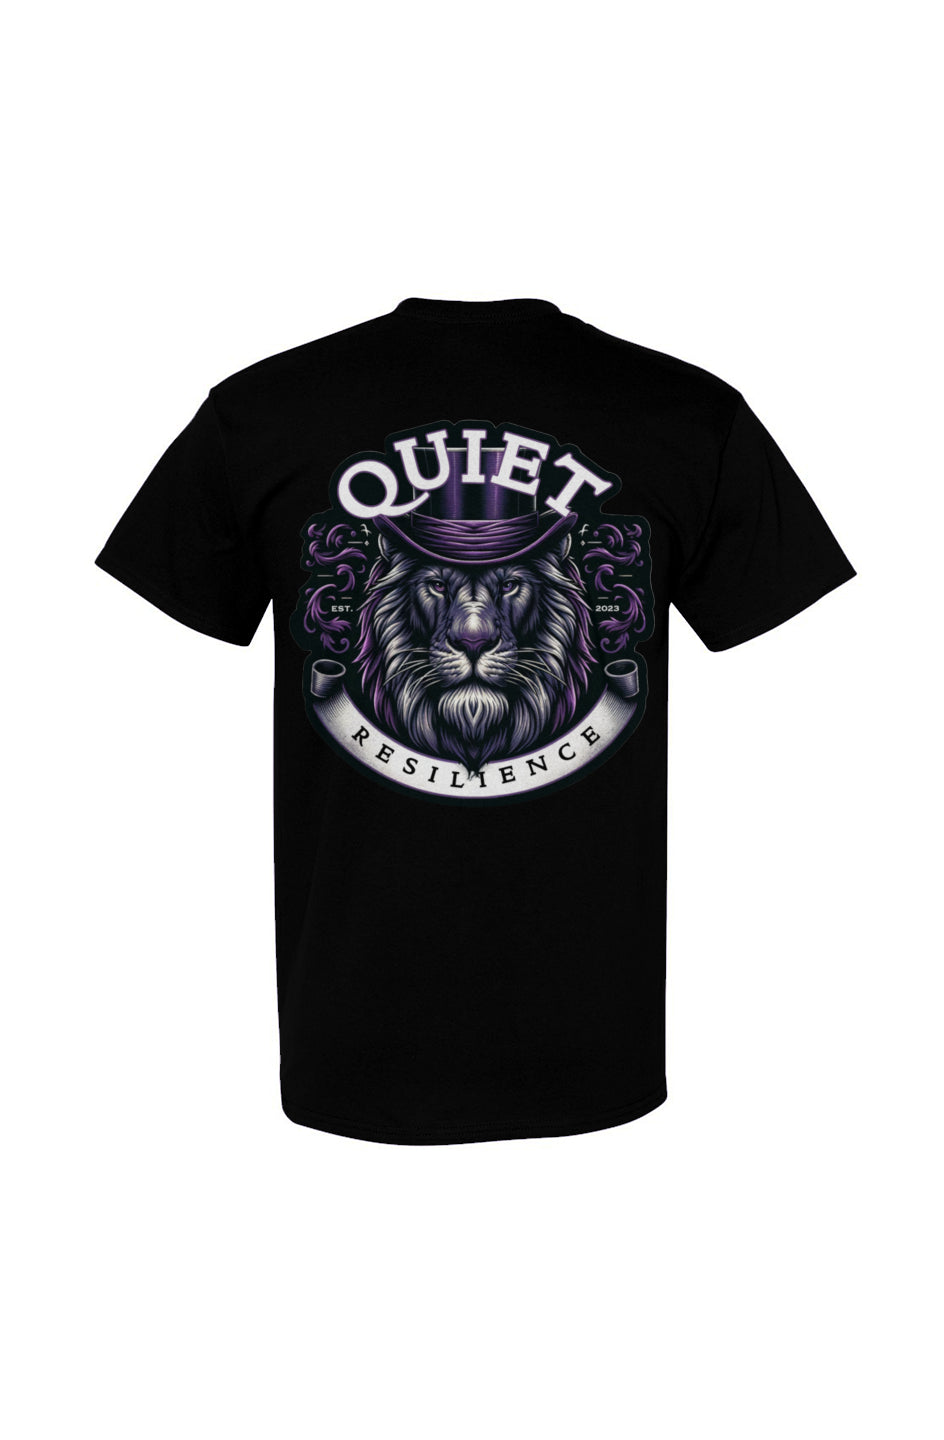 Bold Lion Design | Premium Quality & Durable T-Shirt